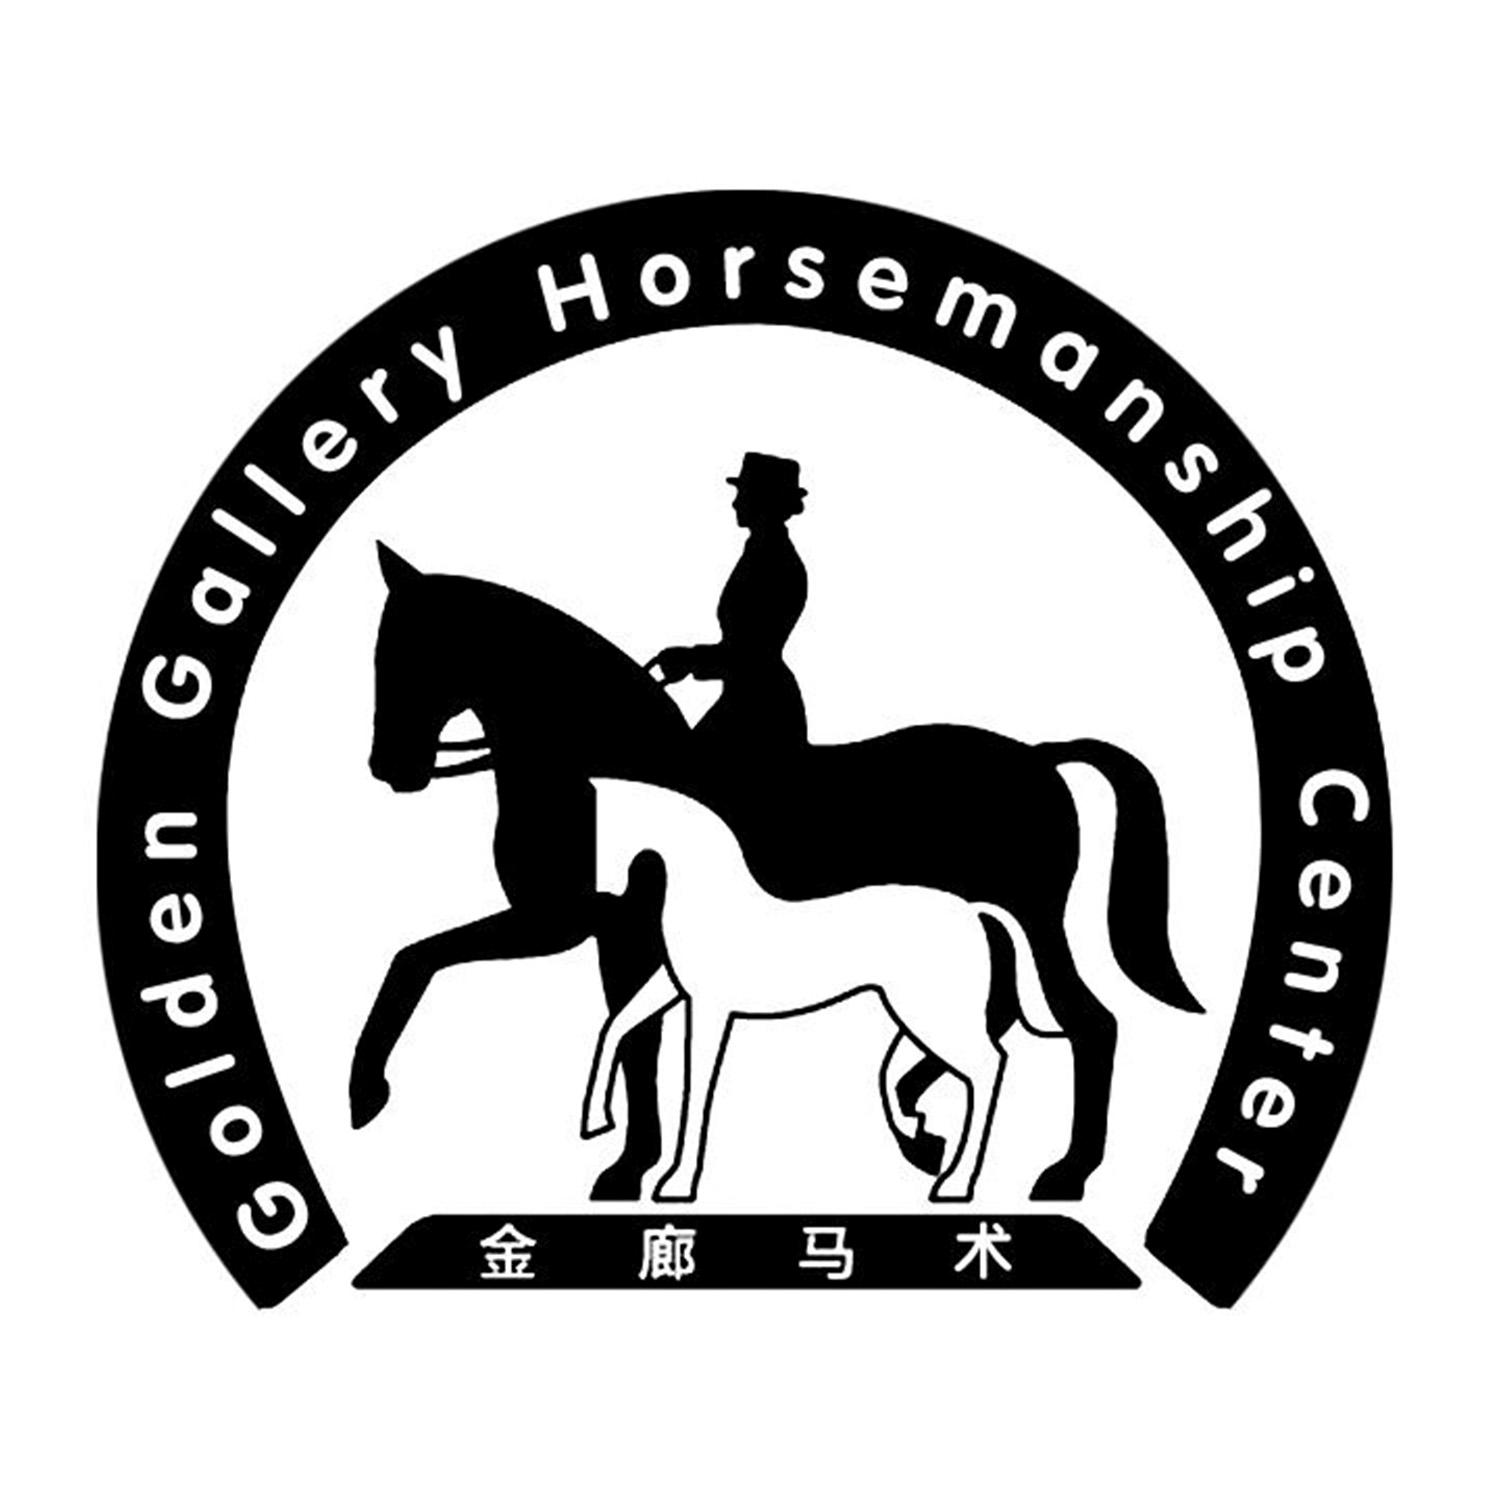 金廊马术 golden gallery horsemanship center